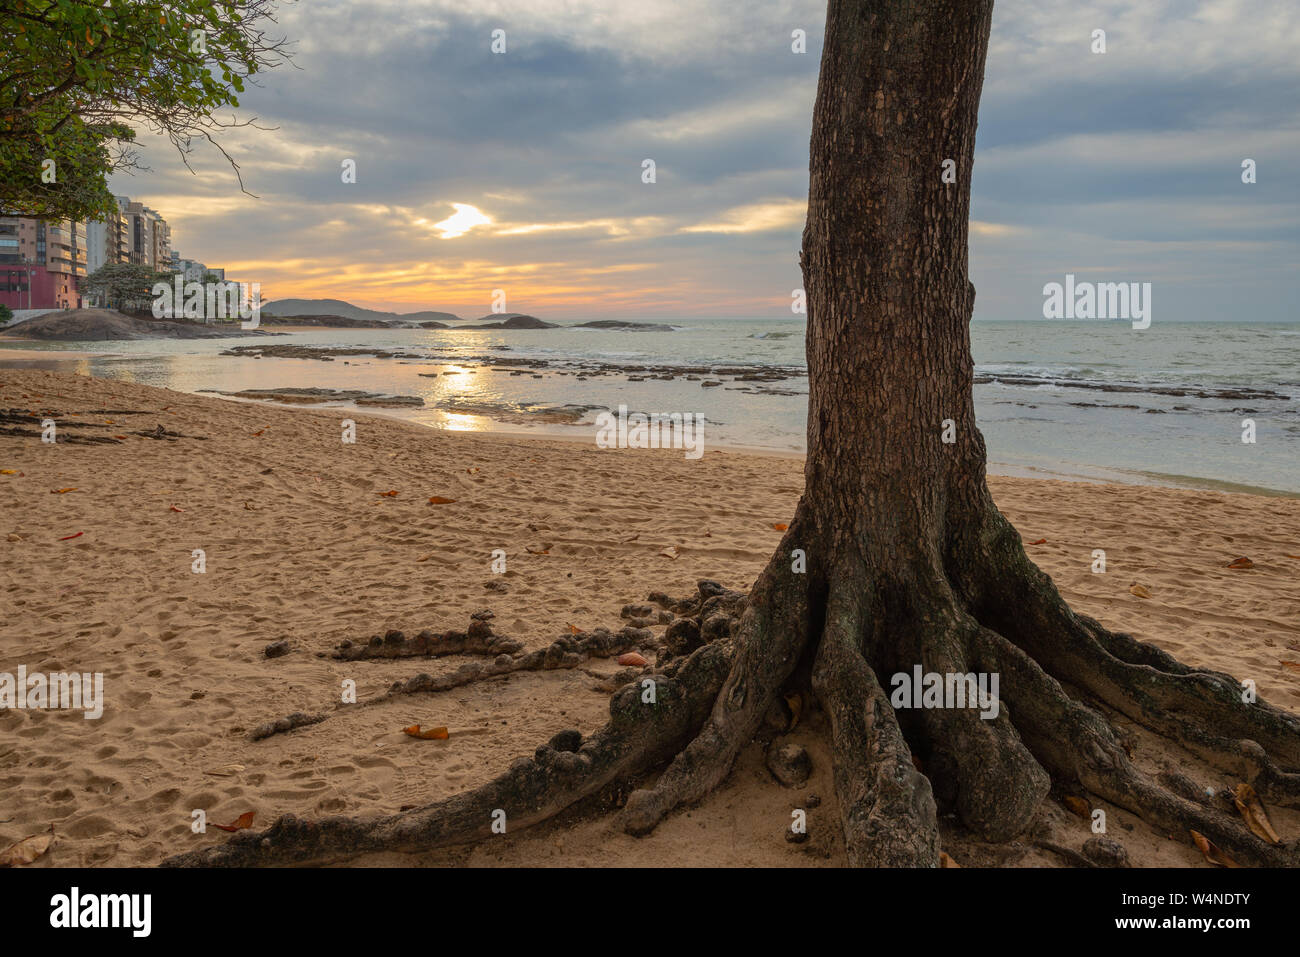 Sunrise in the Castanheiras (beach almond tree) beach, Guarapari, Espirito Santo State, Brazil. Stock Photo